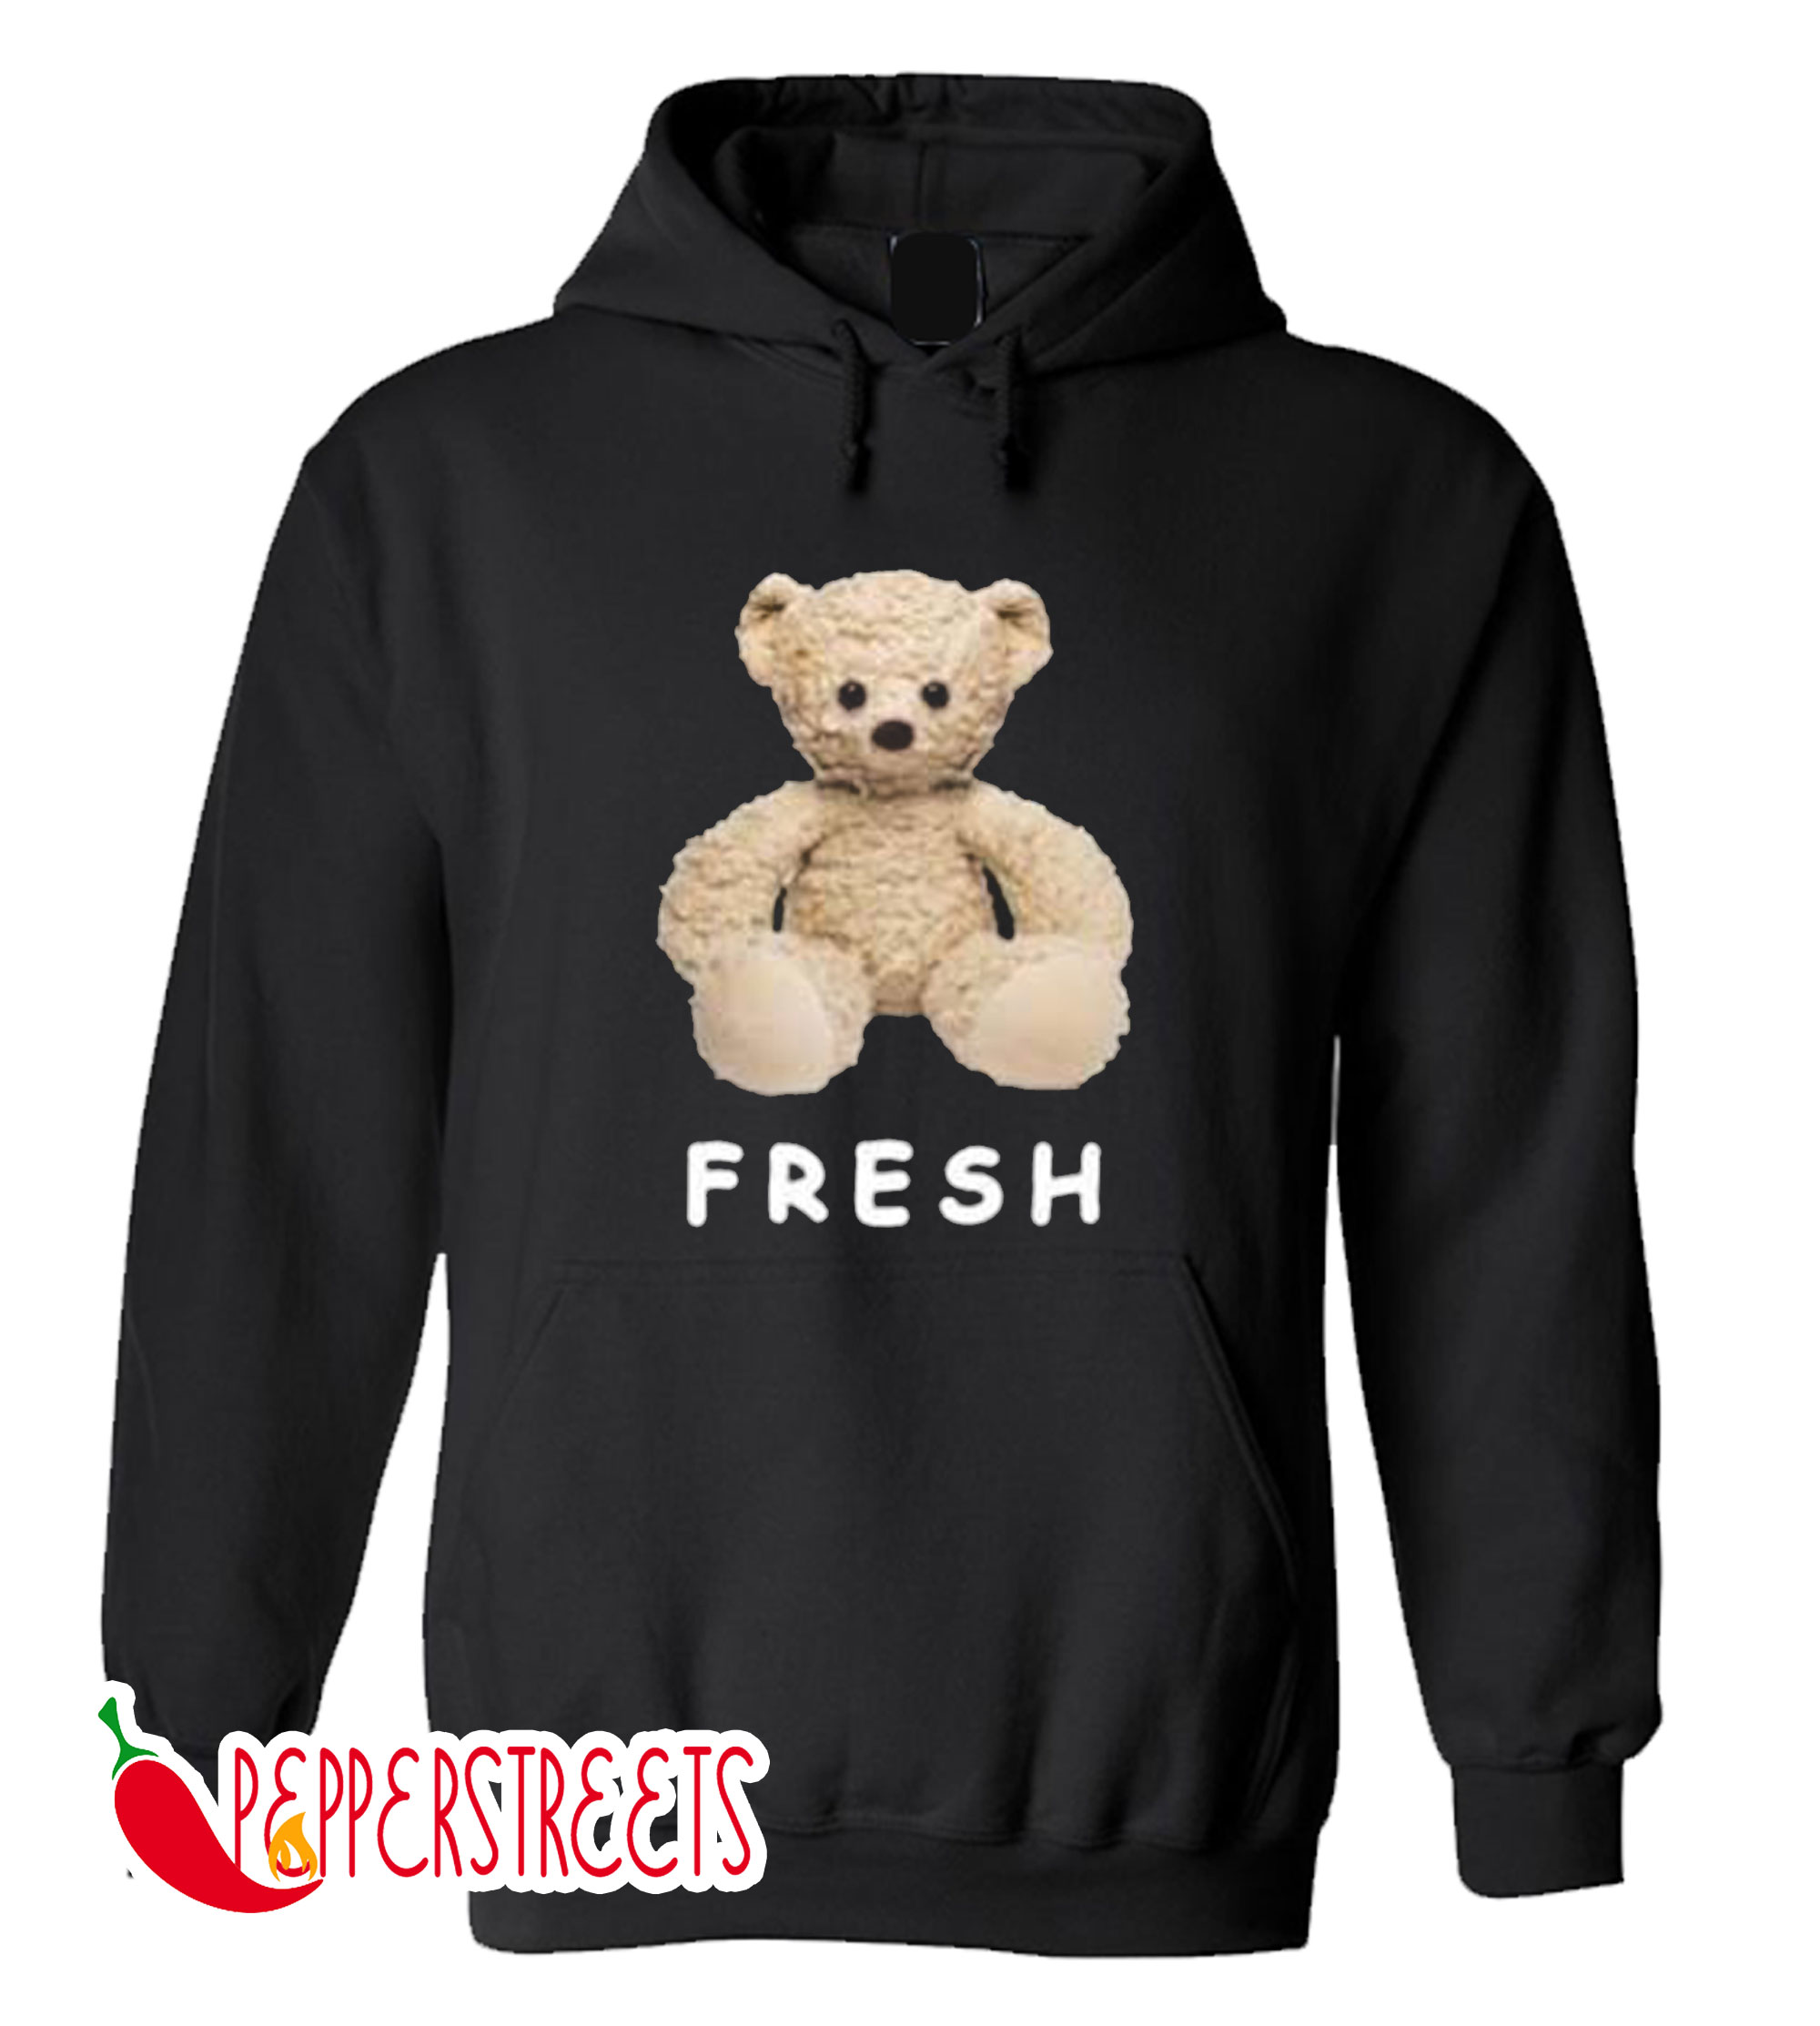 teddy fresh hoodie black